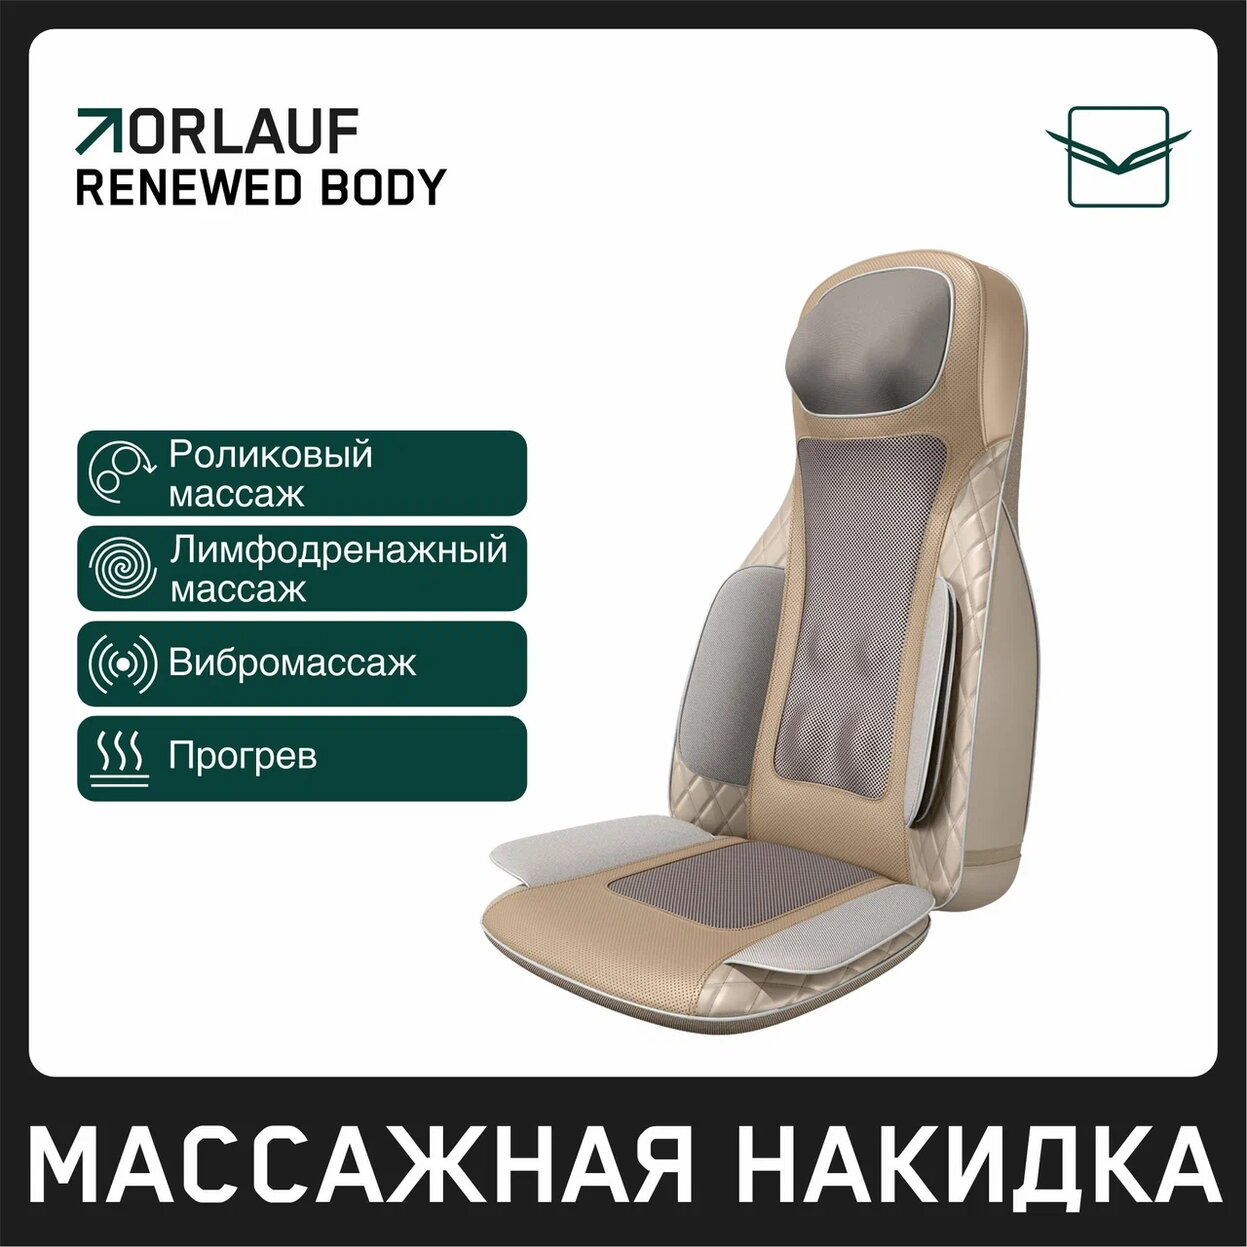 Renewed Body в Омске по цене 39900 ₽ в категории массажные накидки Orlauf